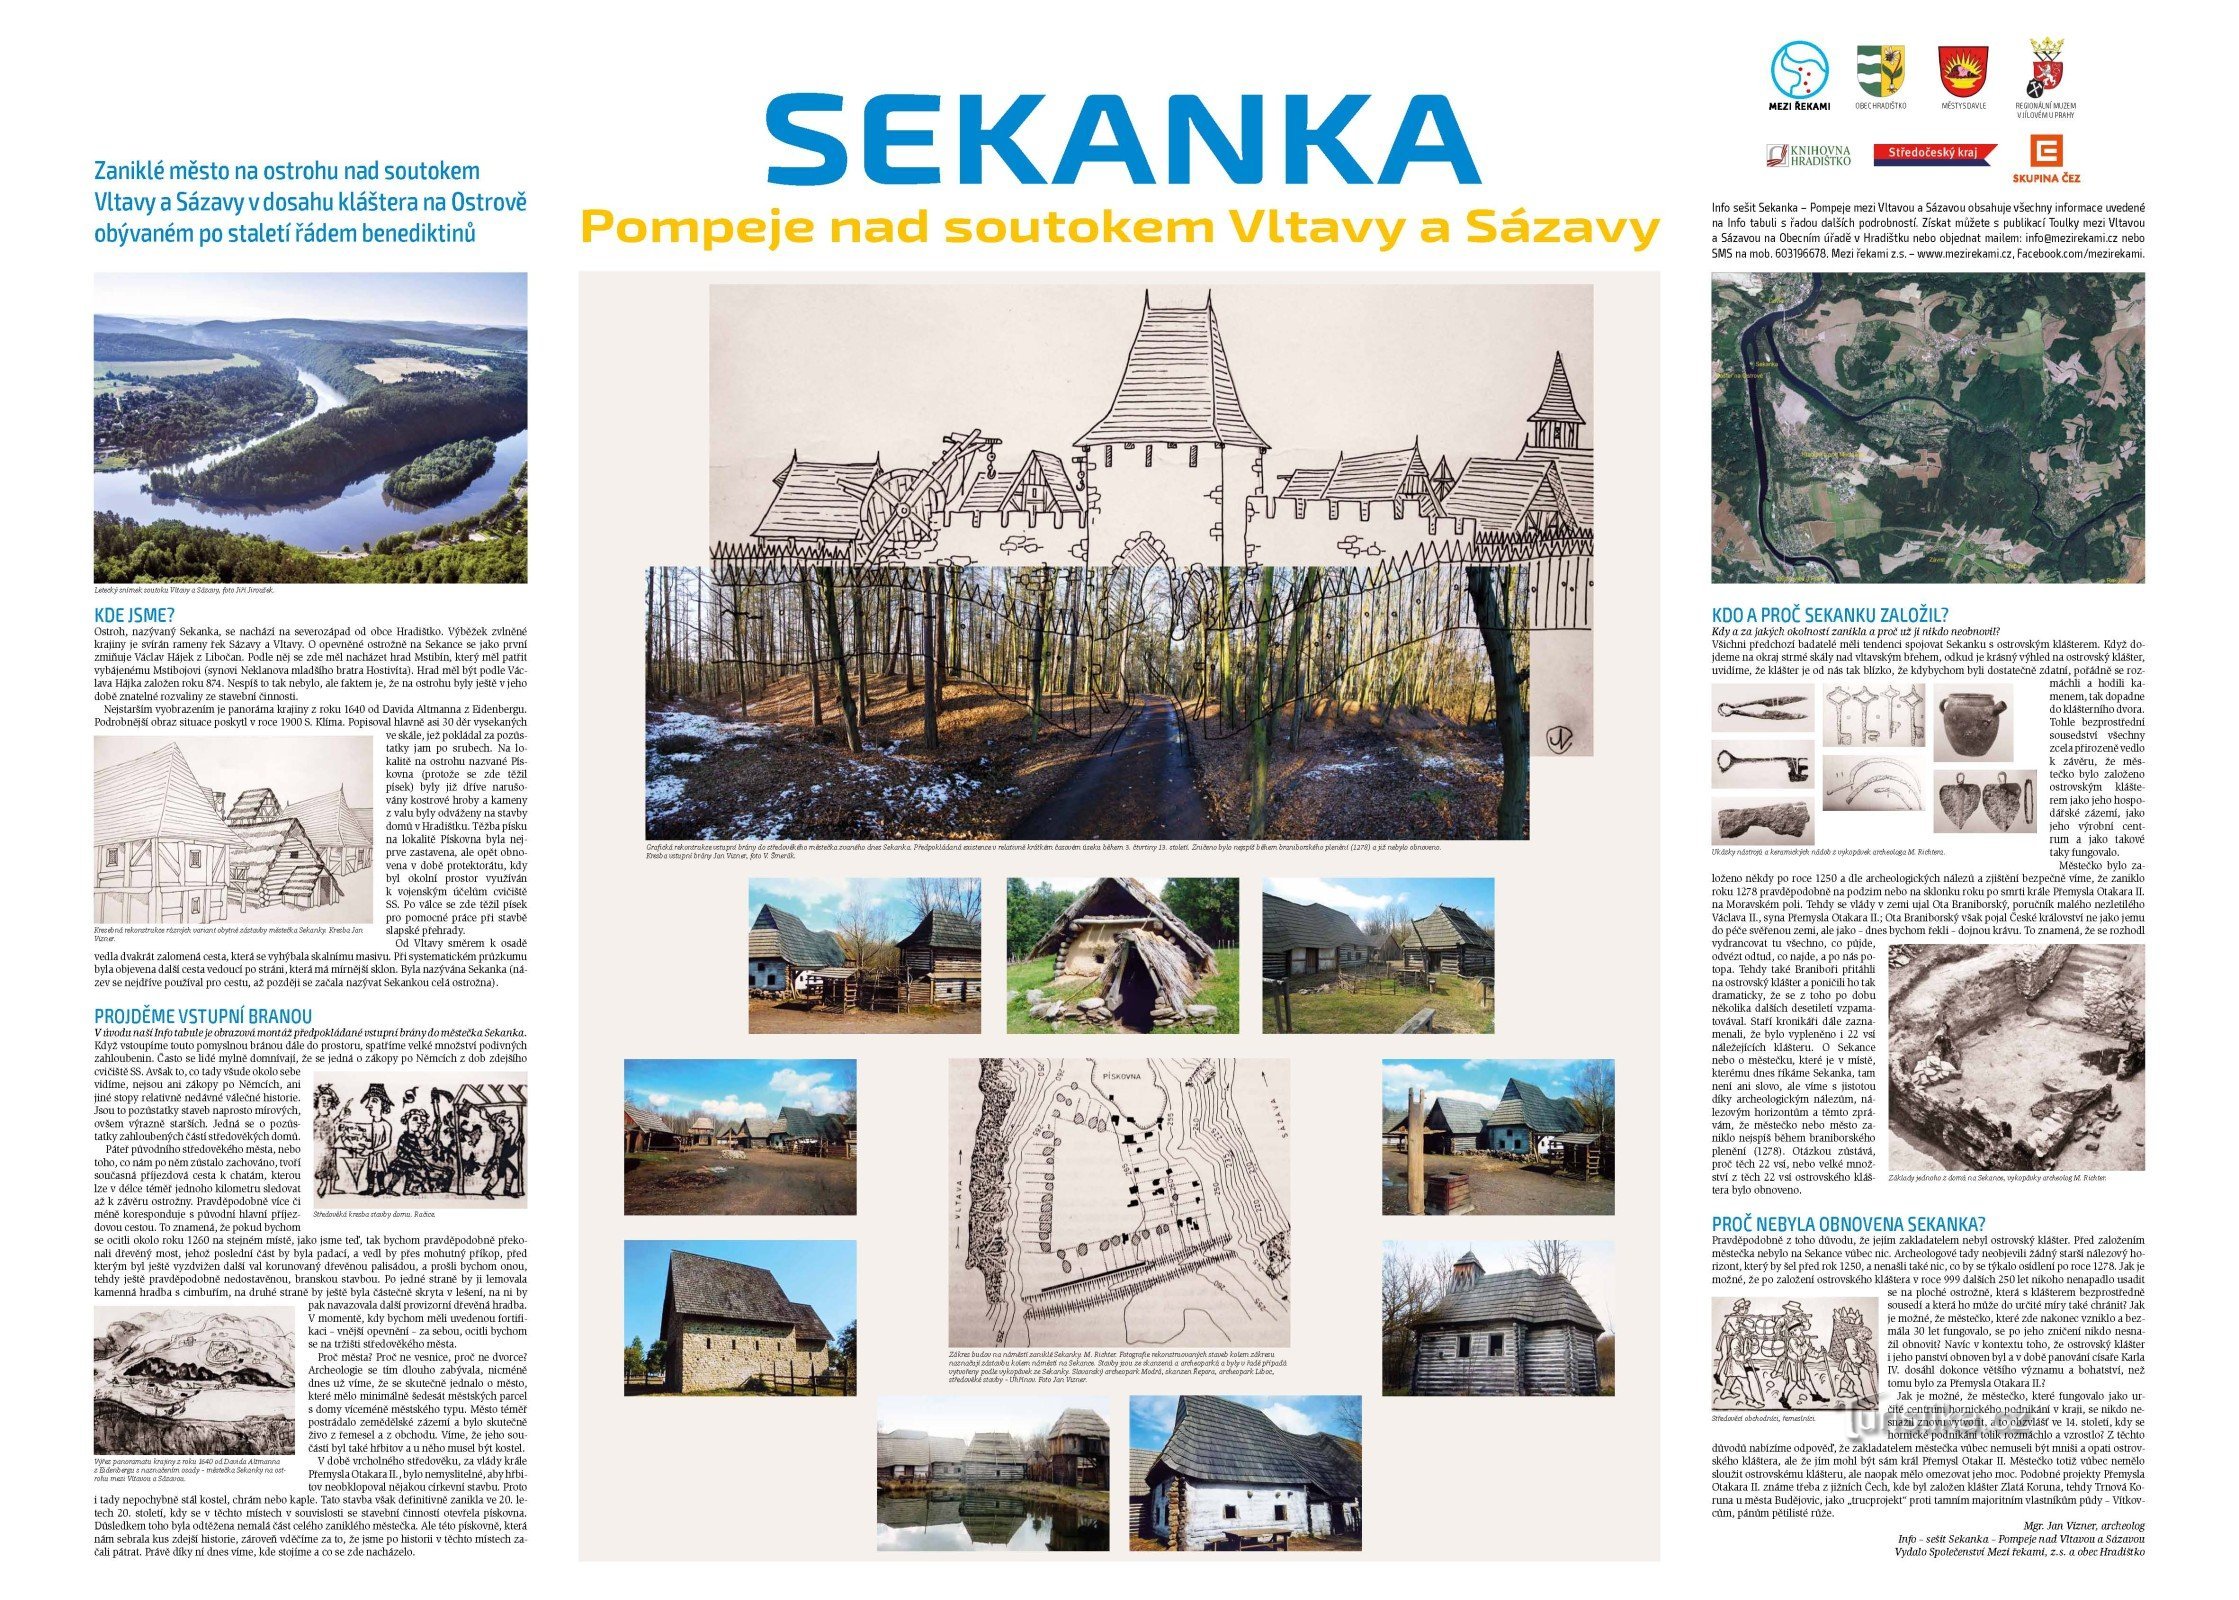 Infopanel med Sekankas historia